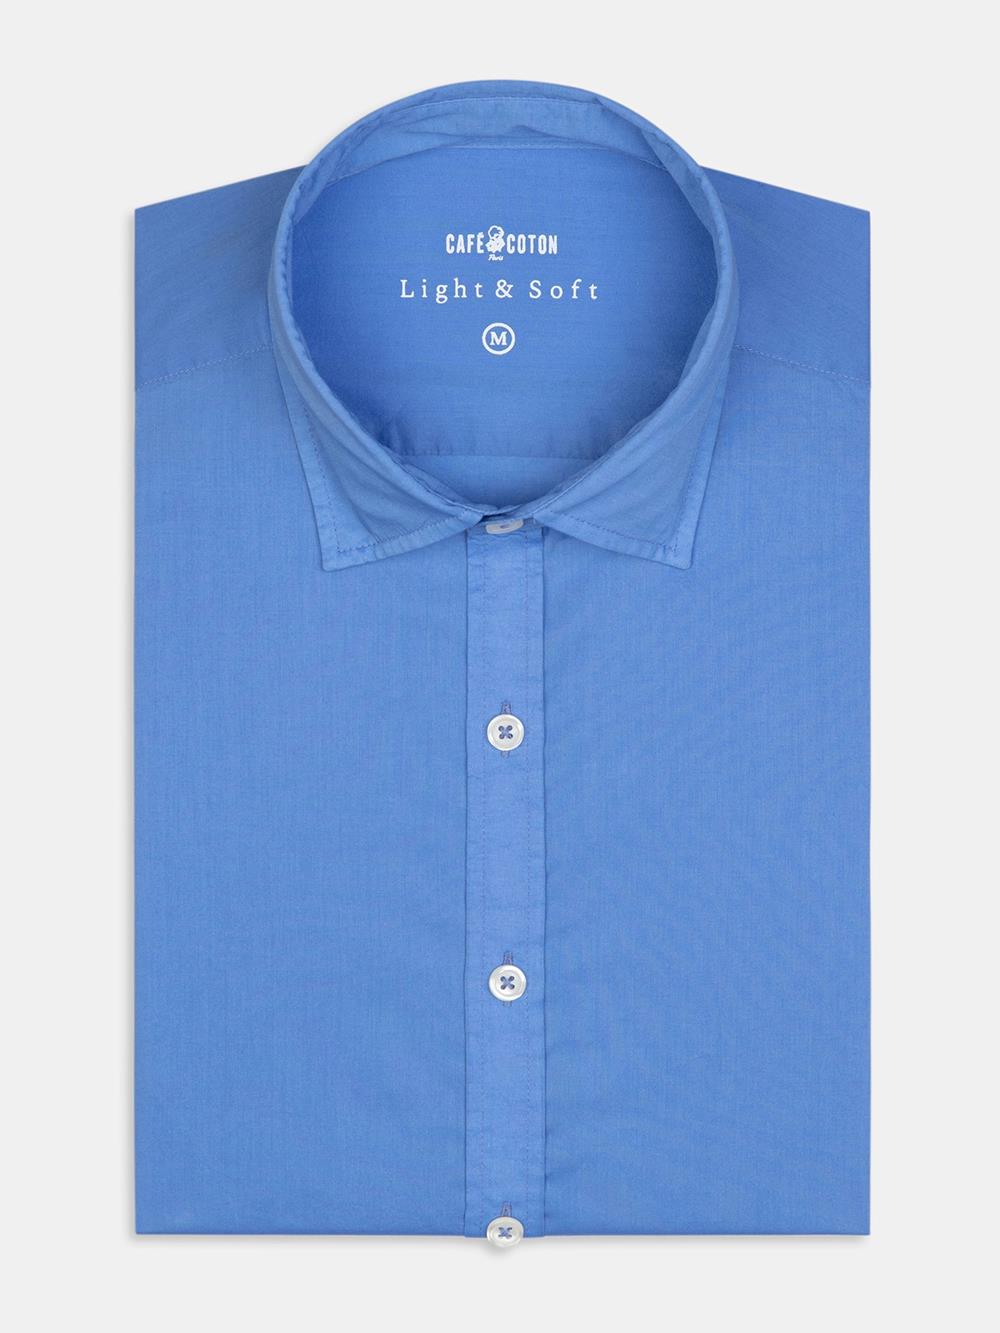 Sky blue cotton voile shirt